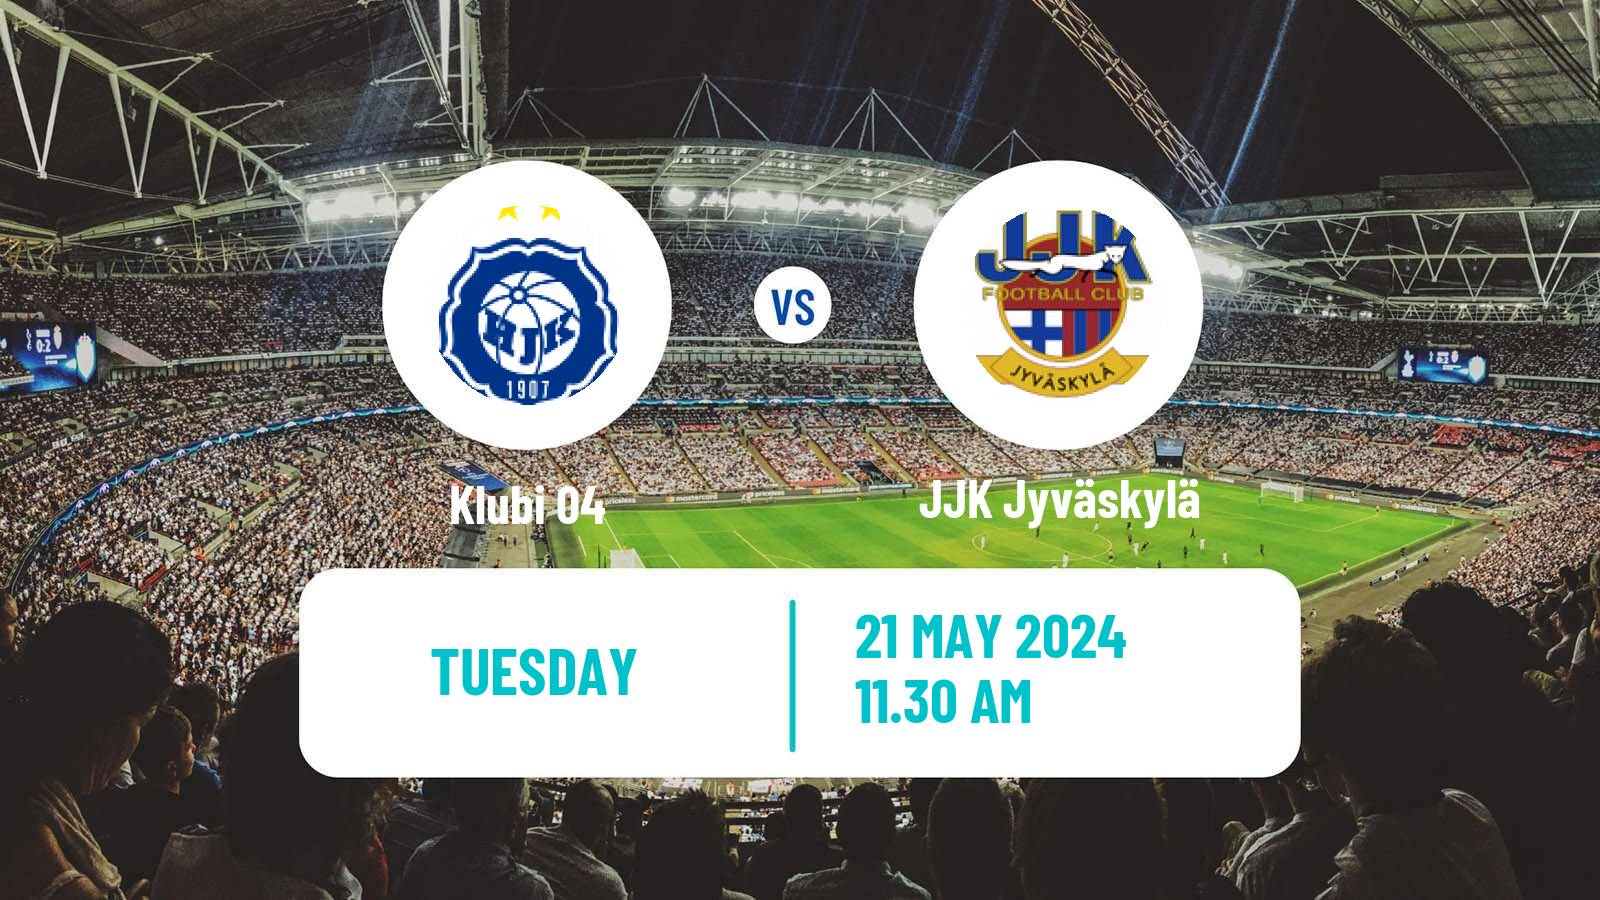 Soccer Finnish Ykkonen Klubi 04 - JJK Jyväskylä